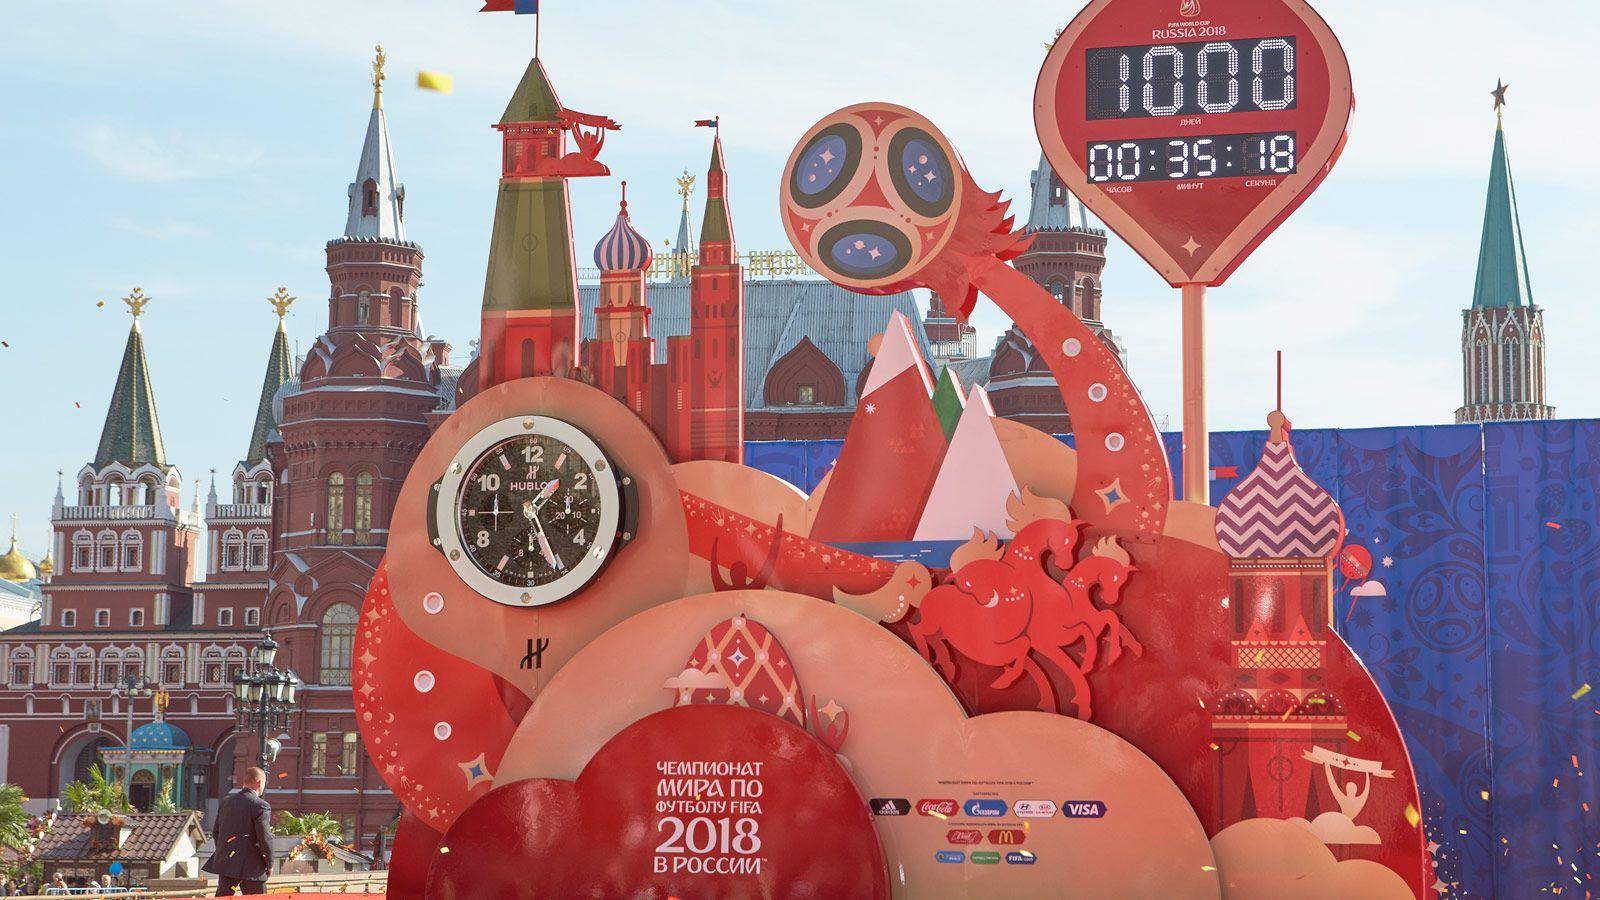 Чемпионат россии fifa 2018. FIFA World Cup Russia 2018. World Cup Russia 2018. Москва. ФИФА 2018 Москва. Мундиаль 2018 Москва.